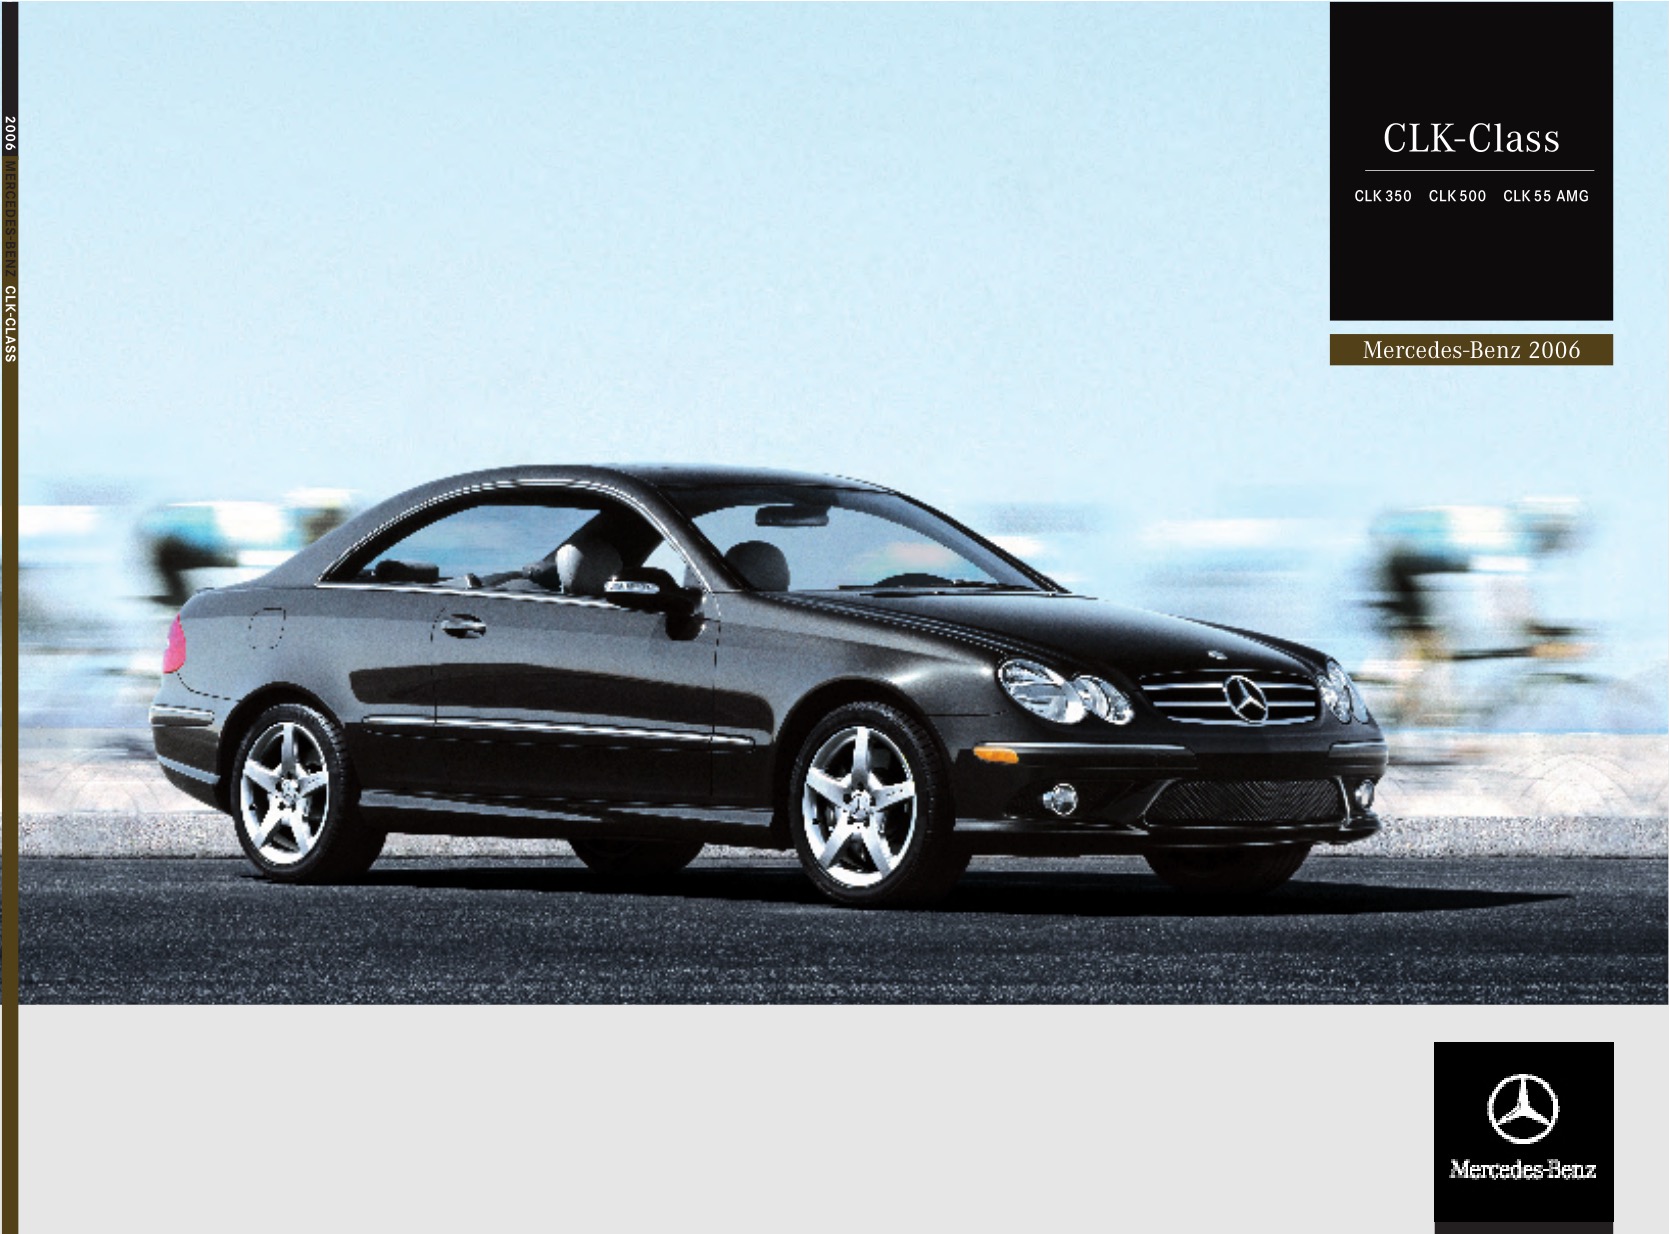 2006 Mercedes-Benz CLK-Class Brochure Page 5